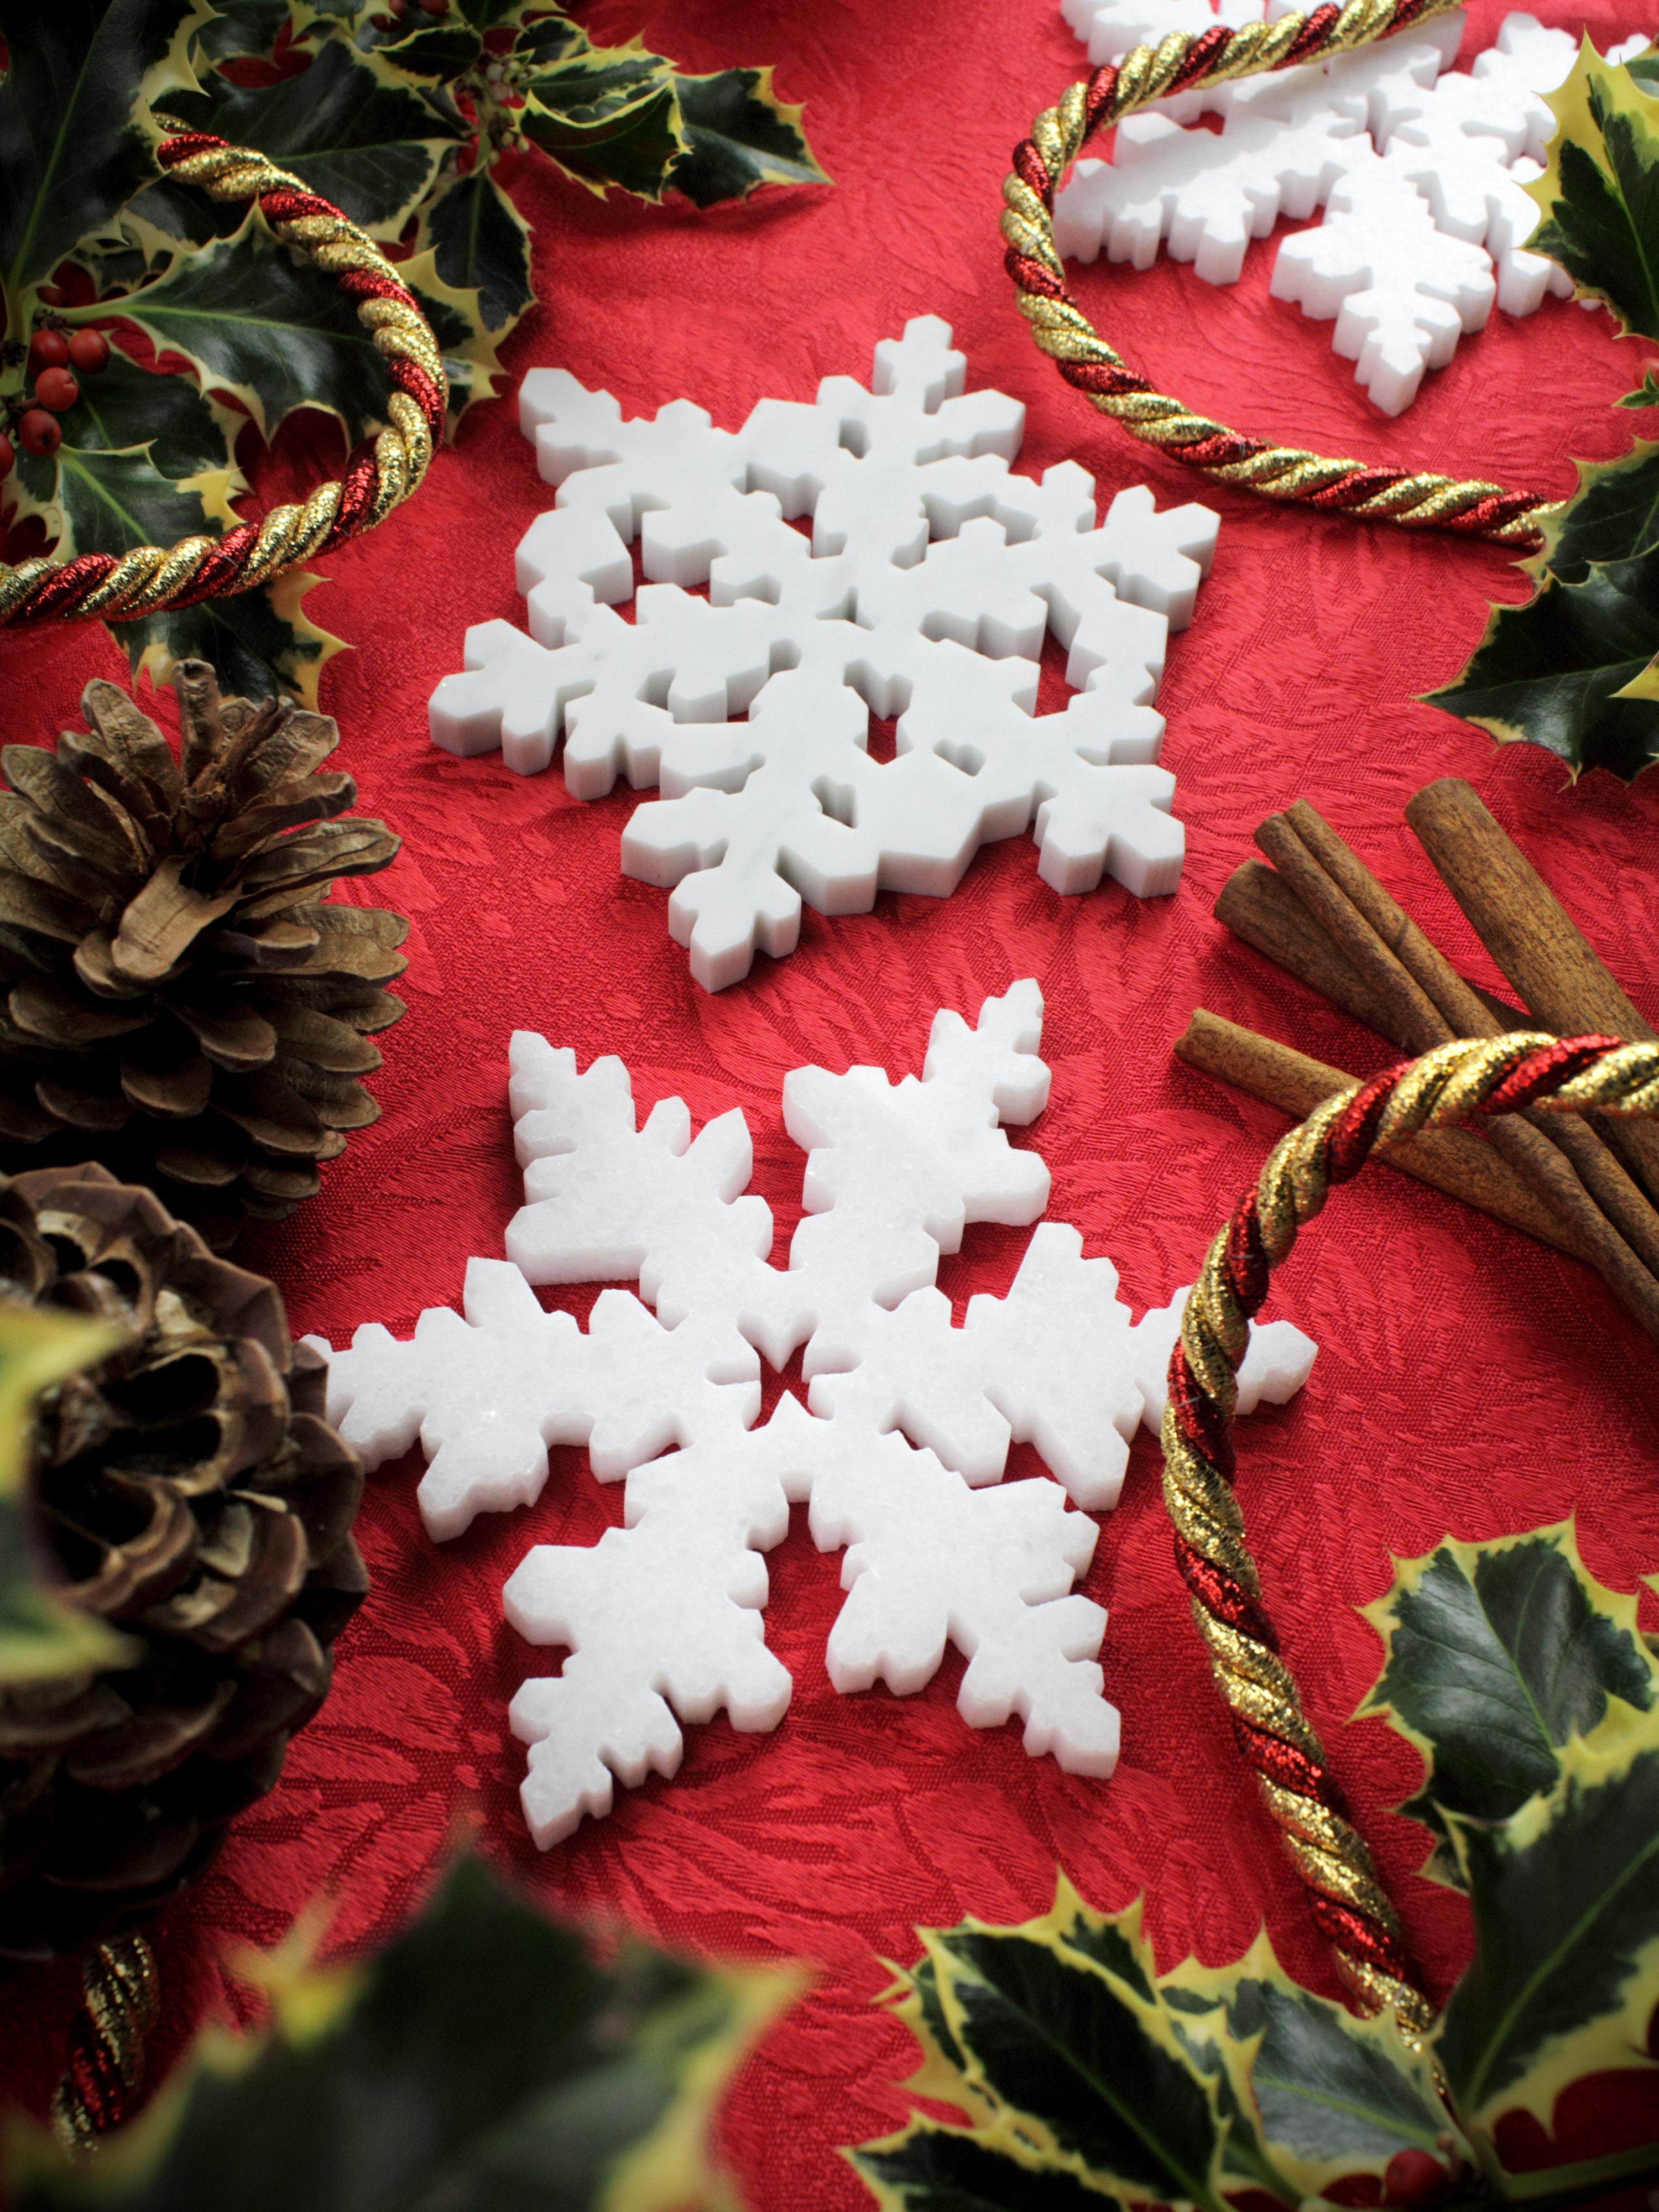 Ce sous-verre 'Winter wonderland Snowflake' en marbre blanc,  inspirés des cristaux de glace, sont le cadeau idéal pour l'hiver et la période de Noël.
Sous-verre en marbre blanc cristallin absolu poli d'Italie.
Grâce à leur forme et à leur taille,